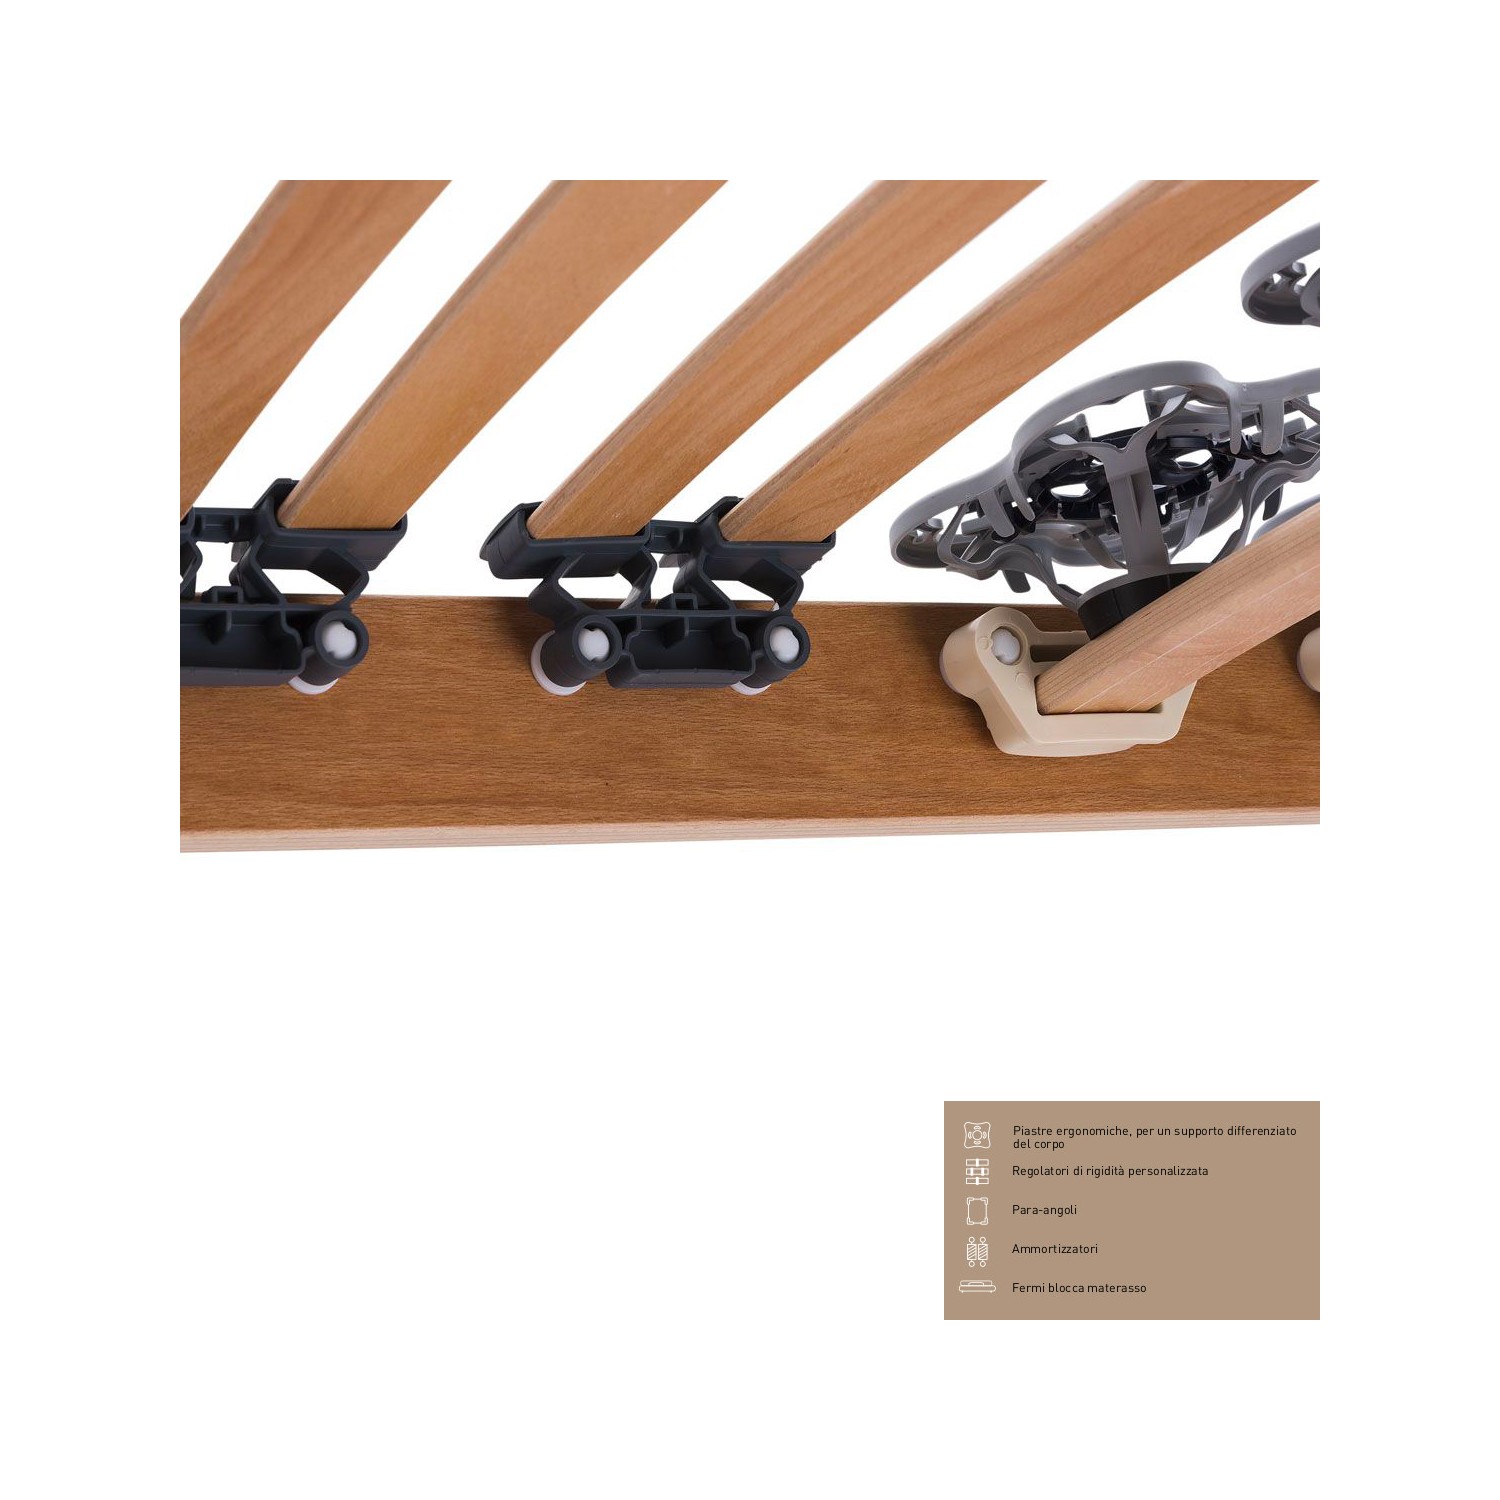 Rete Magniflex ERGO DUE FISSA cm 85 x 190/195/200 piastre ergonomiche, regolatori di rigidità doghe legno